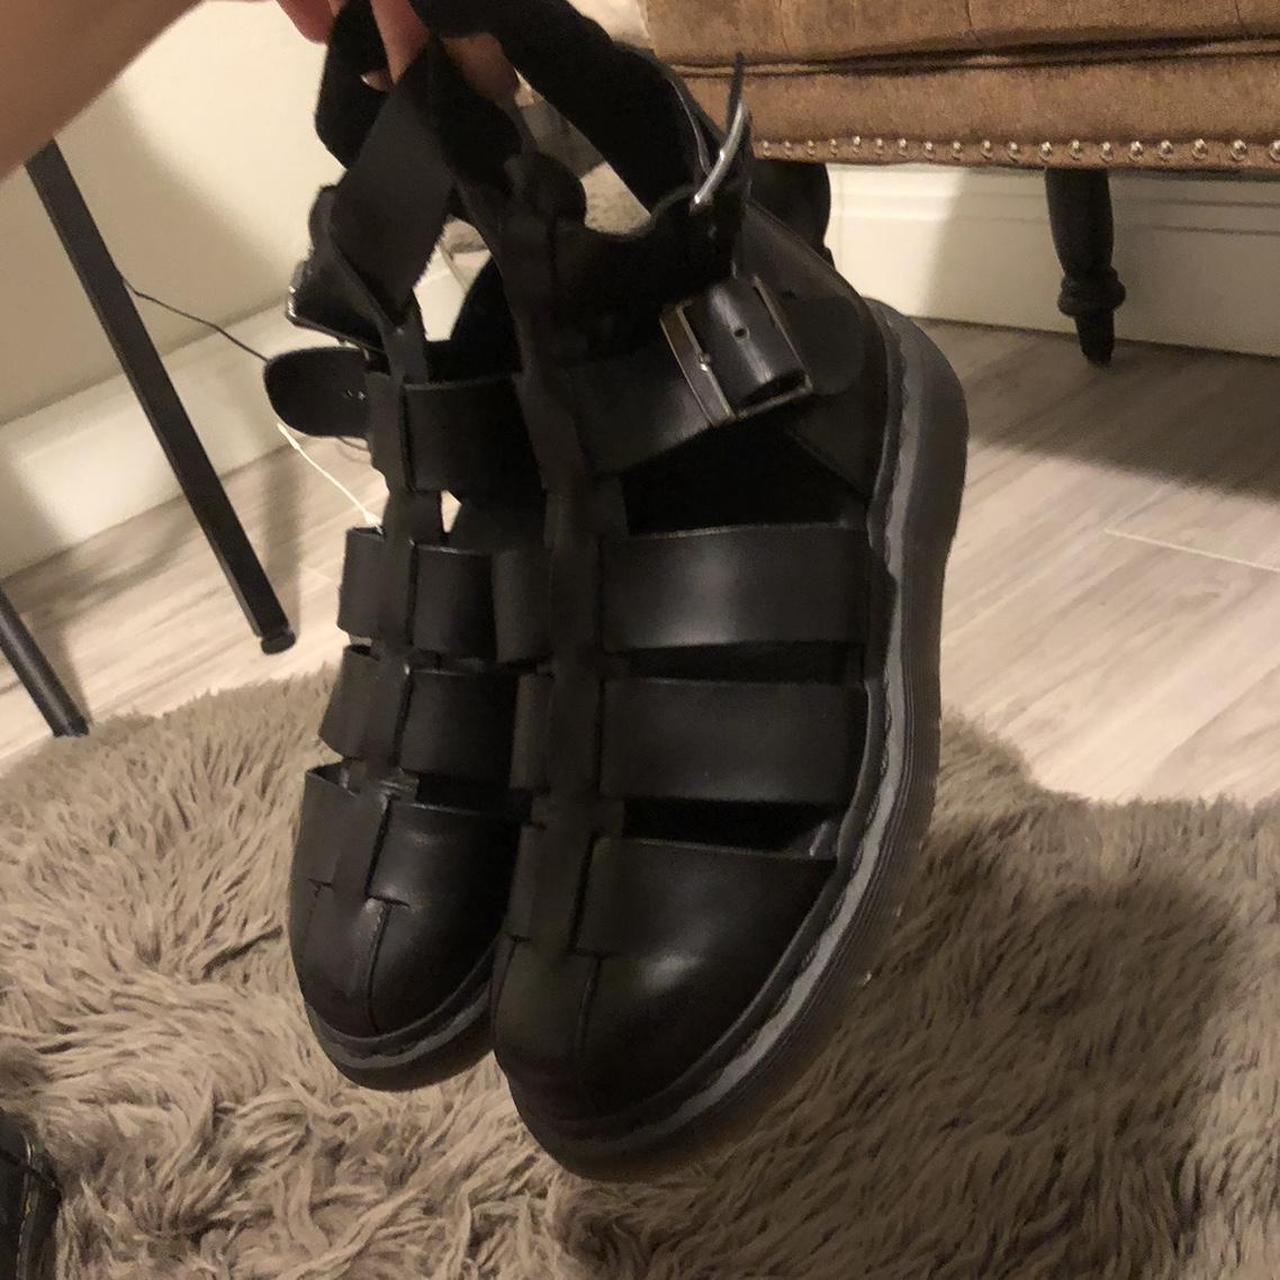 Dr Marten Geraldo Gladiator Sandals in Black Size:... - Depop